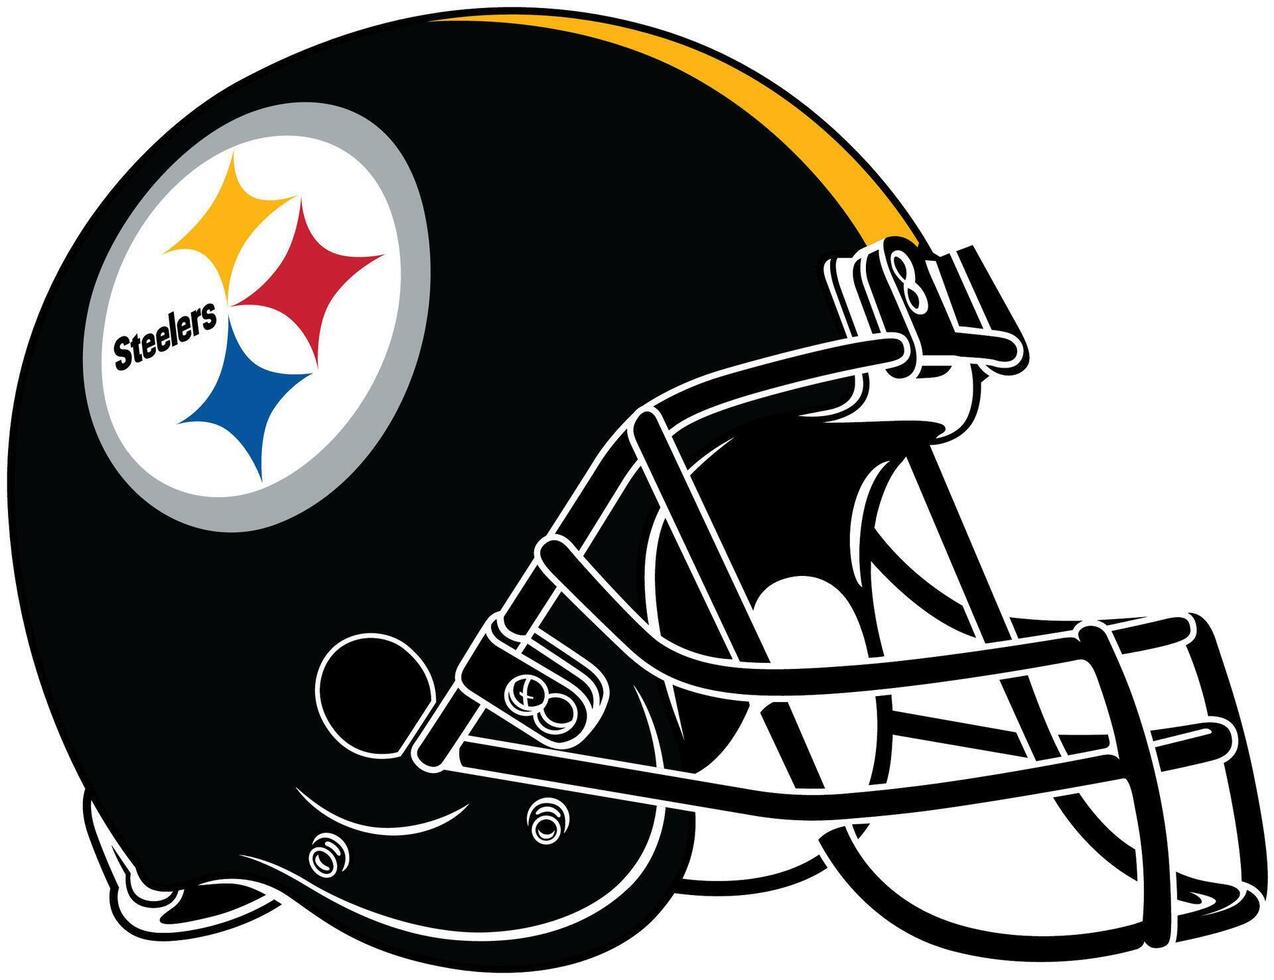 el negro casco de el Pittsburgh acereros americano fútbol americano equipo vector